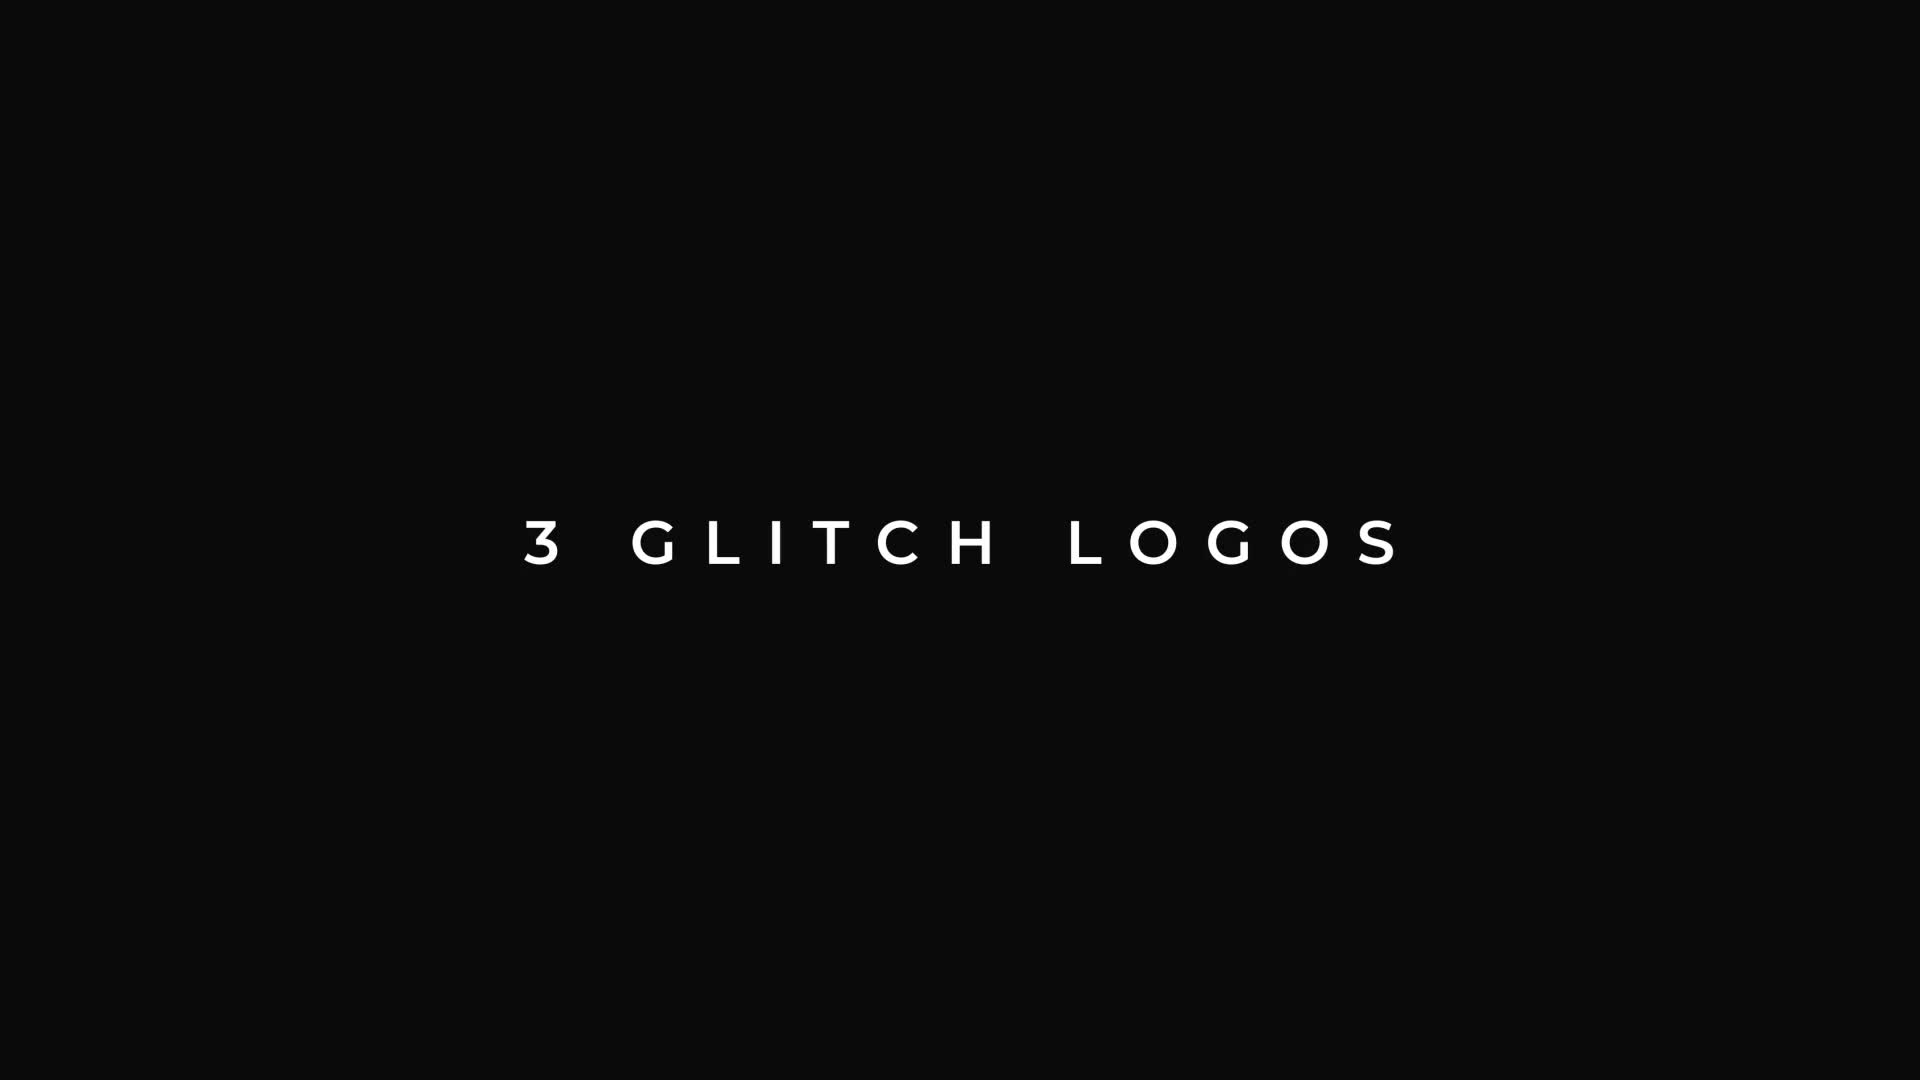 Glitch Logos For Premiere Pro | 3 in 1 Videohive 35551036 Premiere Pro Image 1